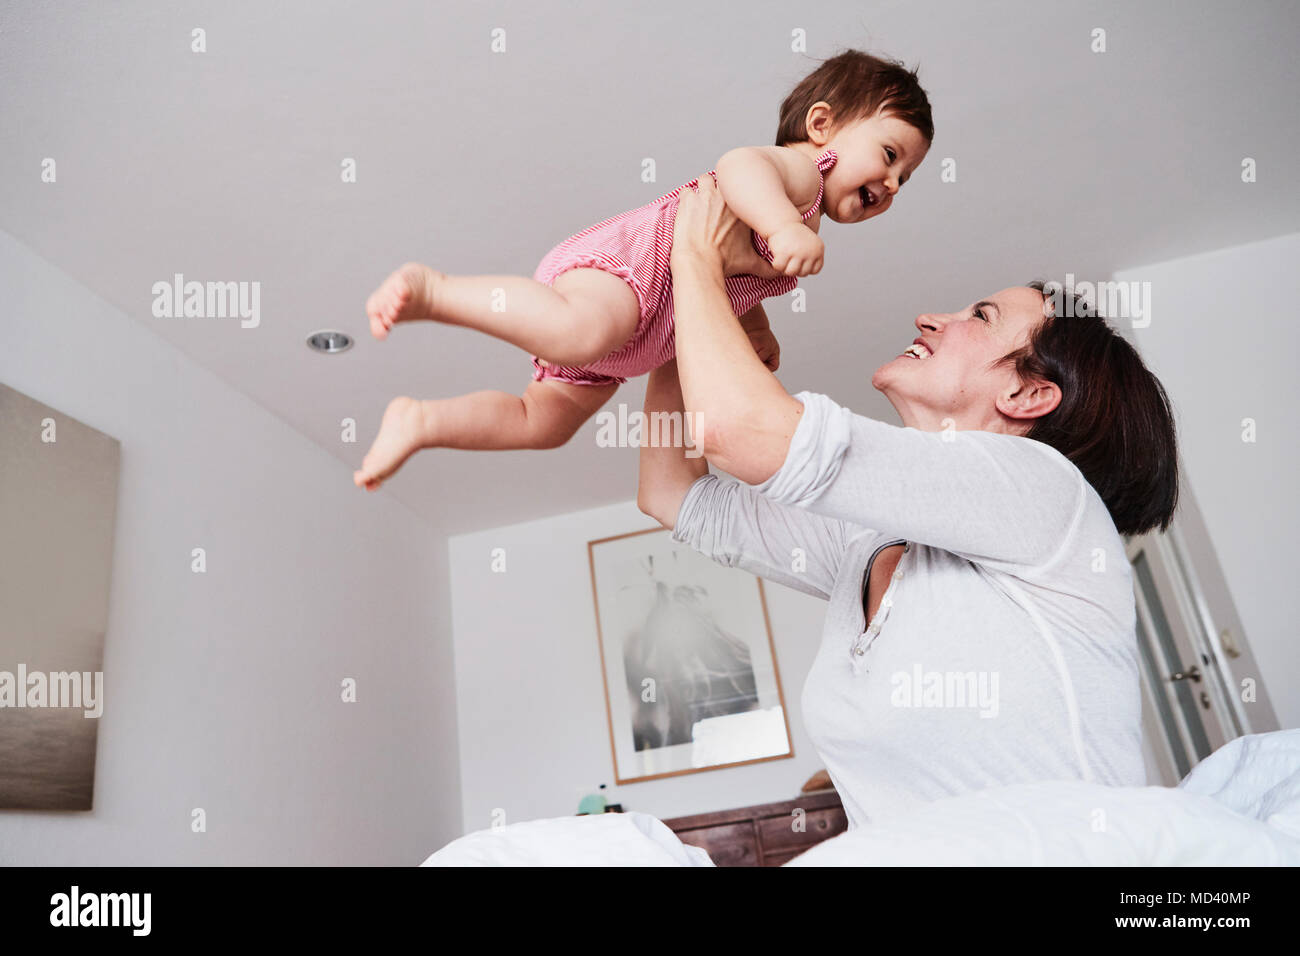 Mère tenant sa petite fille à l'air, low angle view Banque D'Images